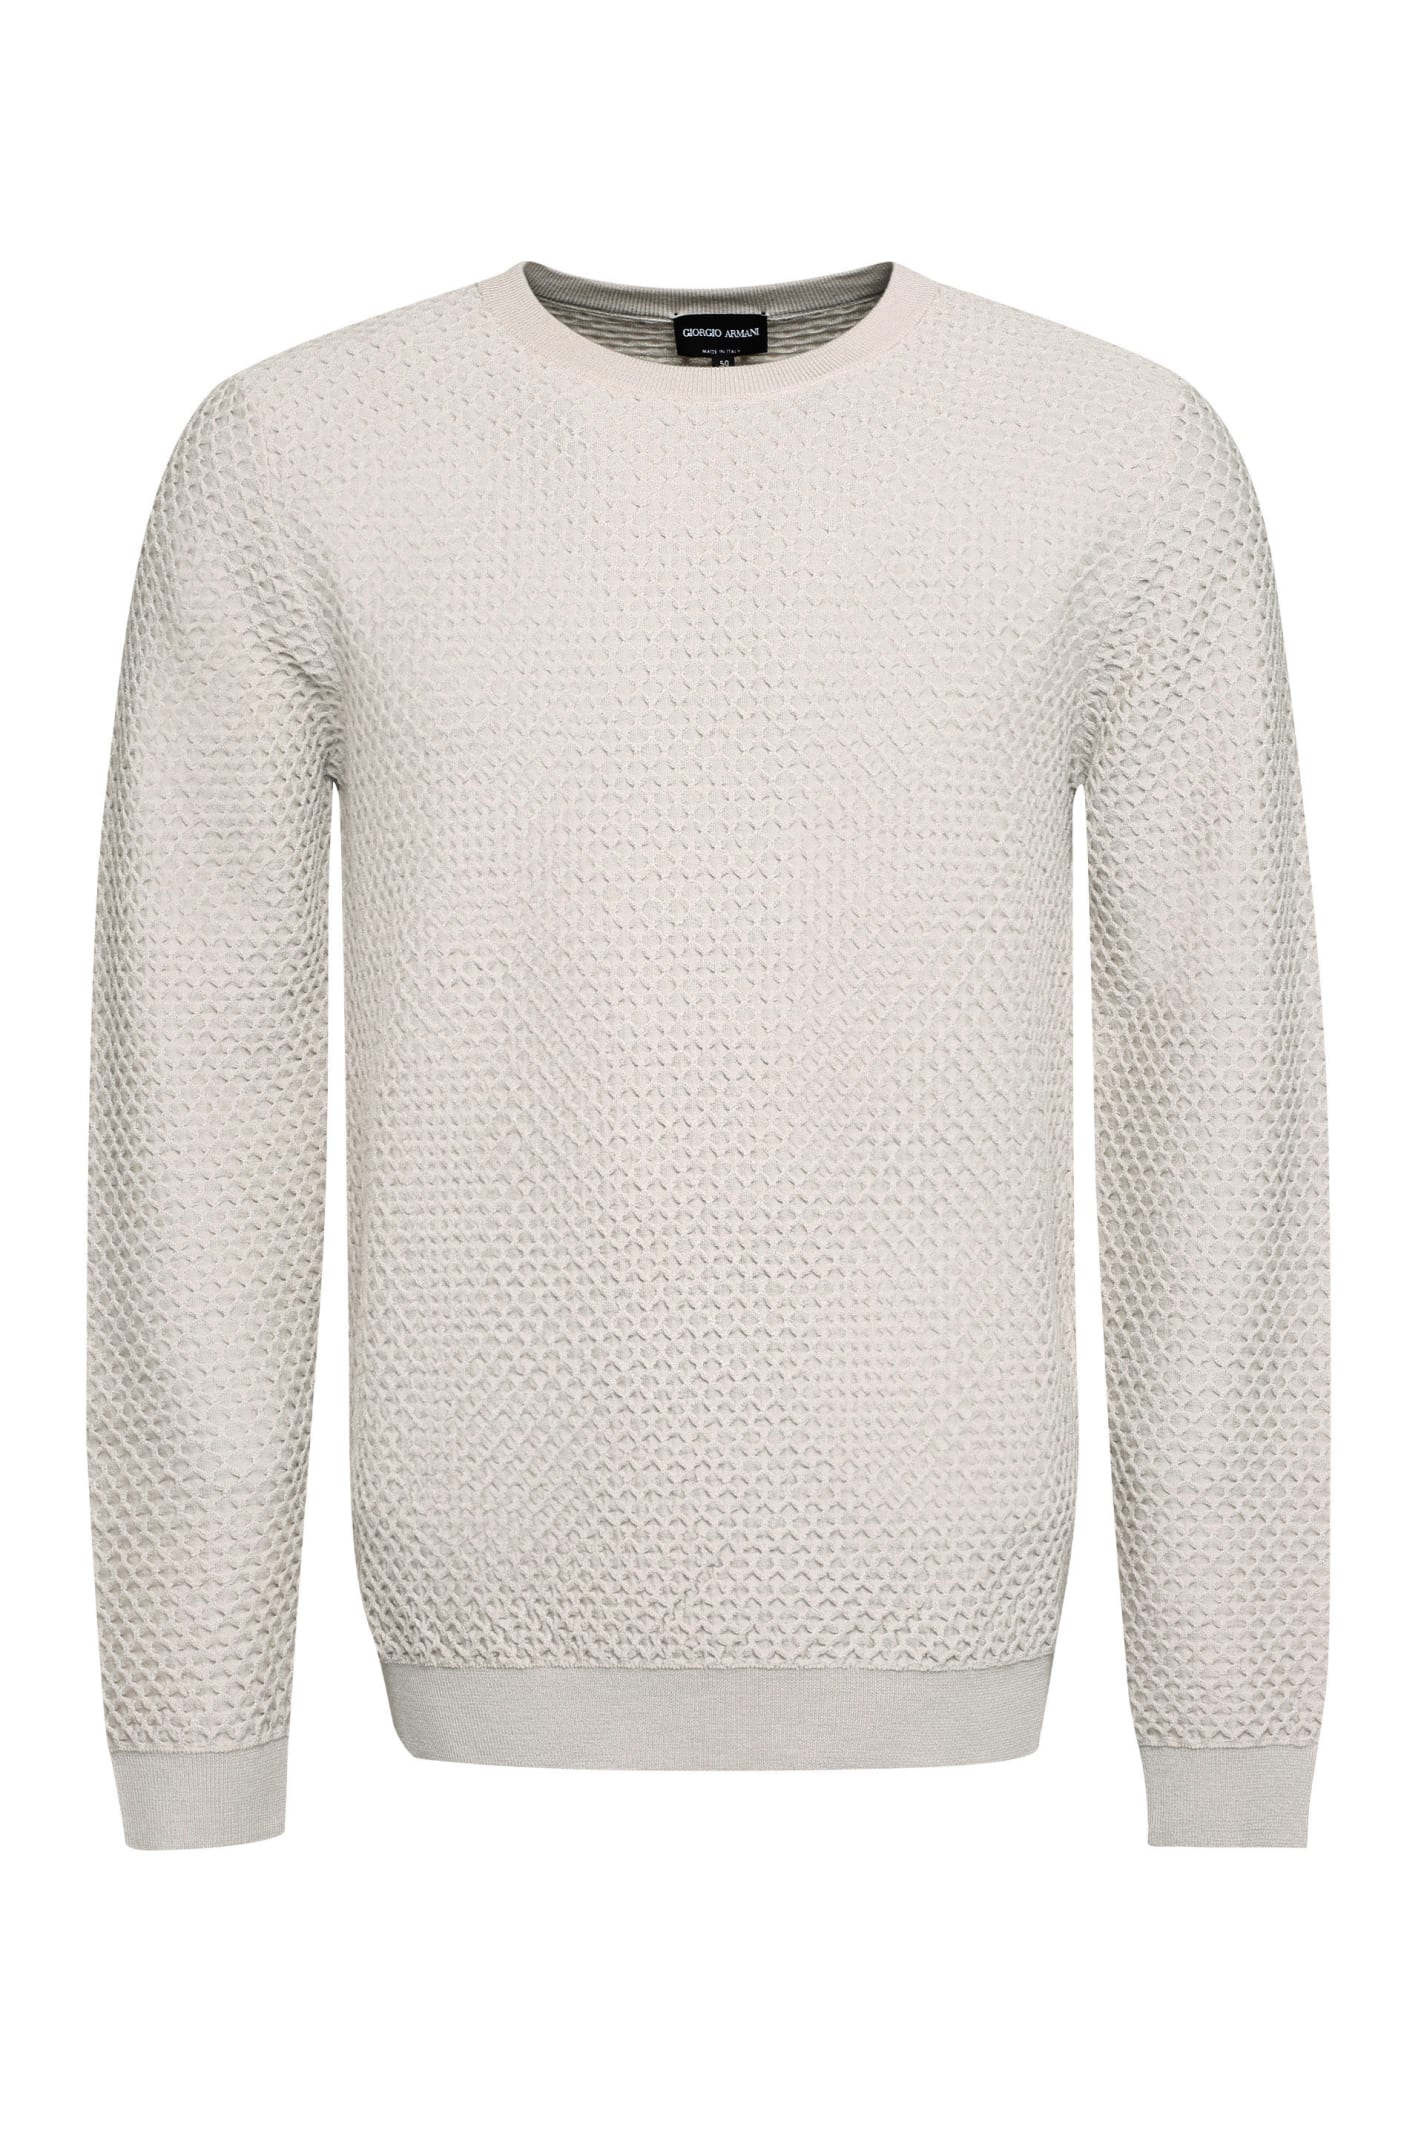 Giorgio Armani Pique-knit Pullover